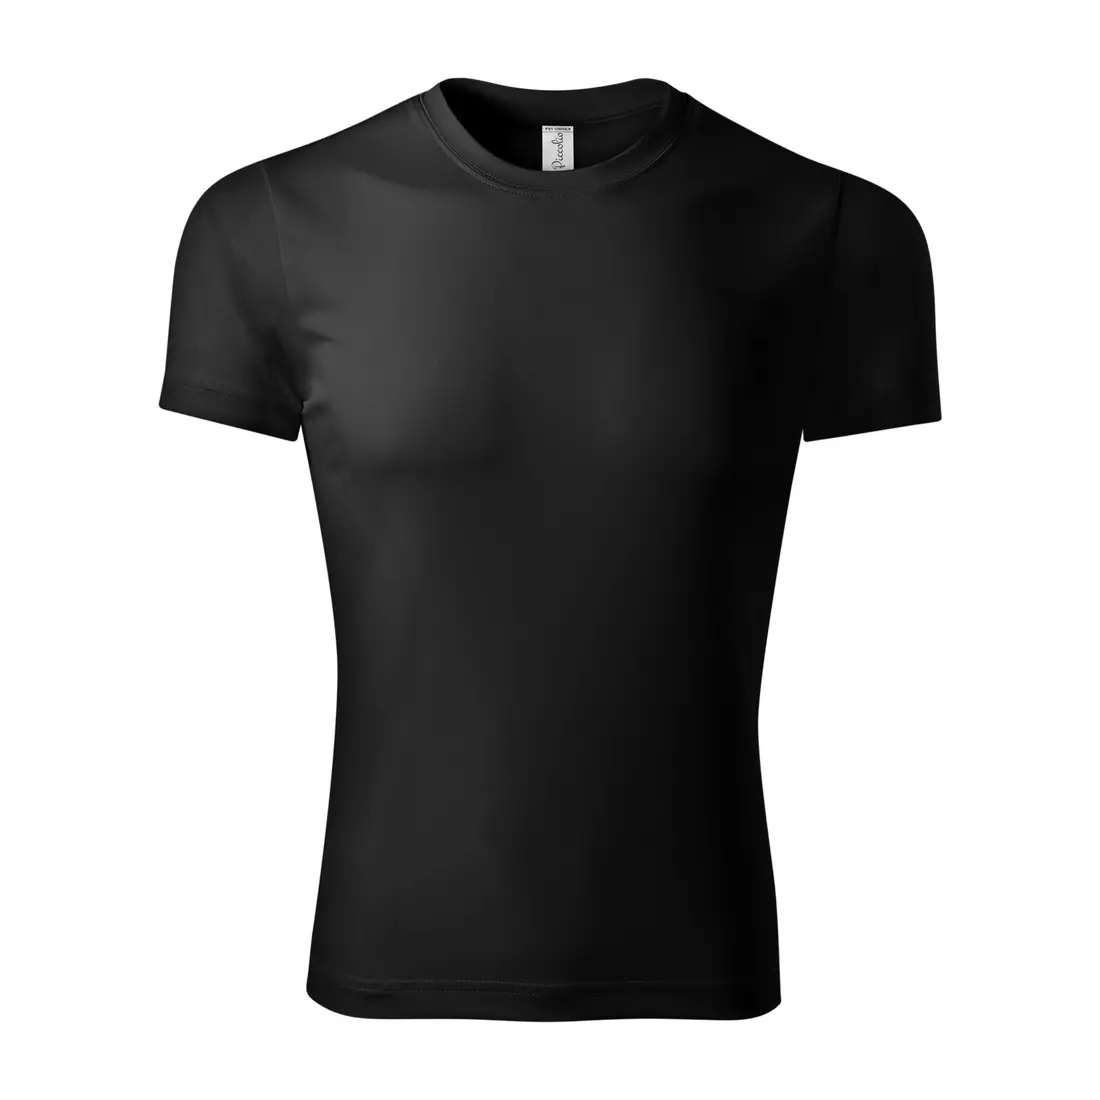 PICCOLIO PIXEL Koszulka sportowa T-shirt, krótki rękaw, męska, czarny 100 % poliester P810112